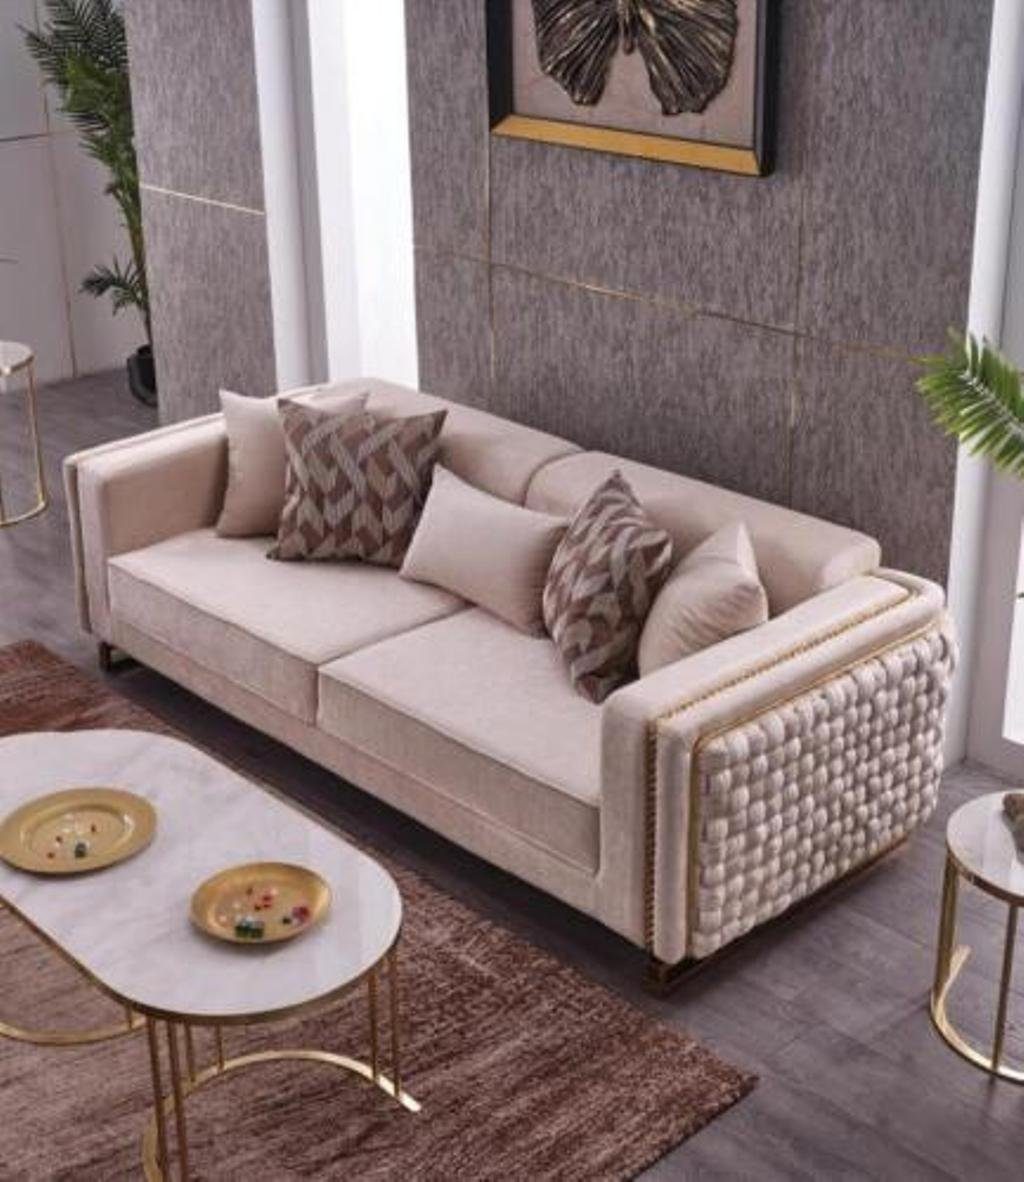 JVmoebel 3-Sitzer Dreisitzer Sofa Wohnzimmer Couch 3 Sitzer Polster Stoff Textil Möbel, 1 Teile, Made in Europa